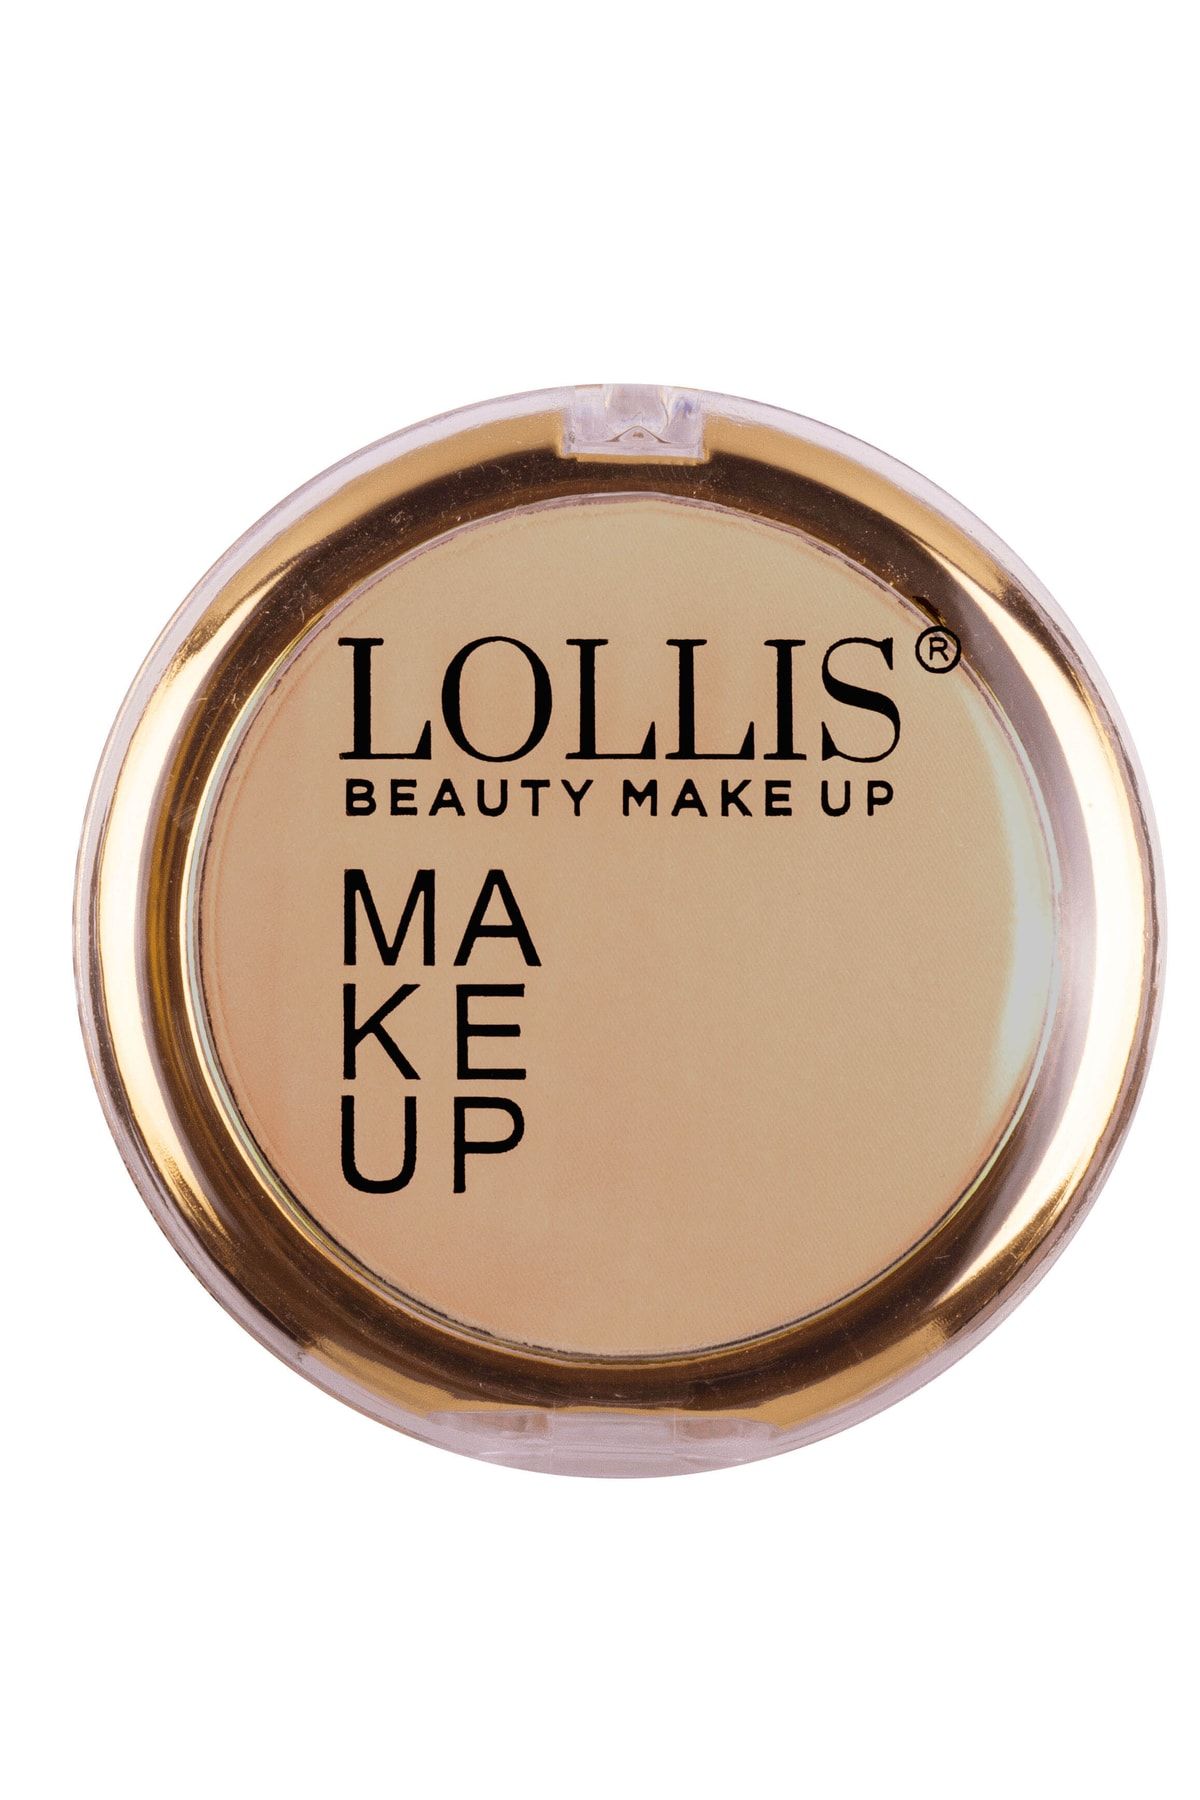 Lollis Make Up Powder 57 / Make Up Pudra 57